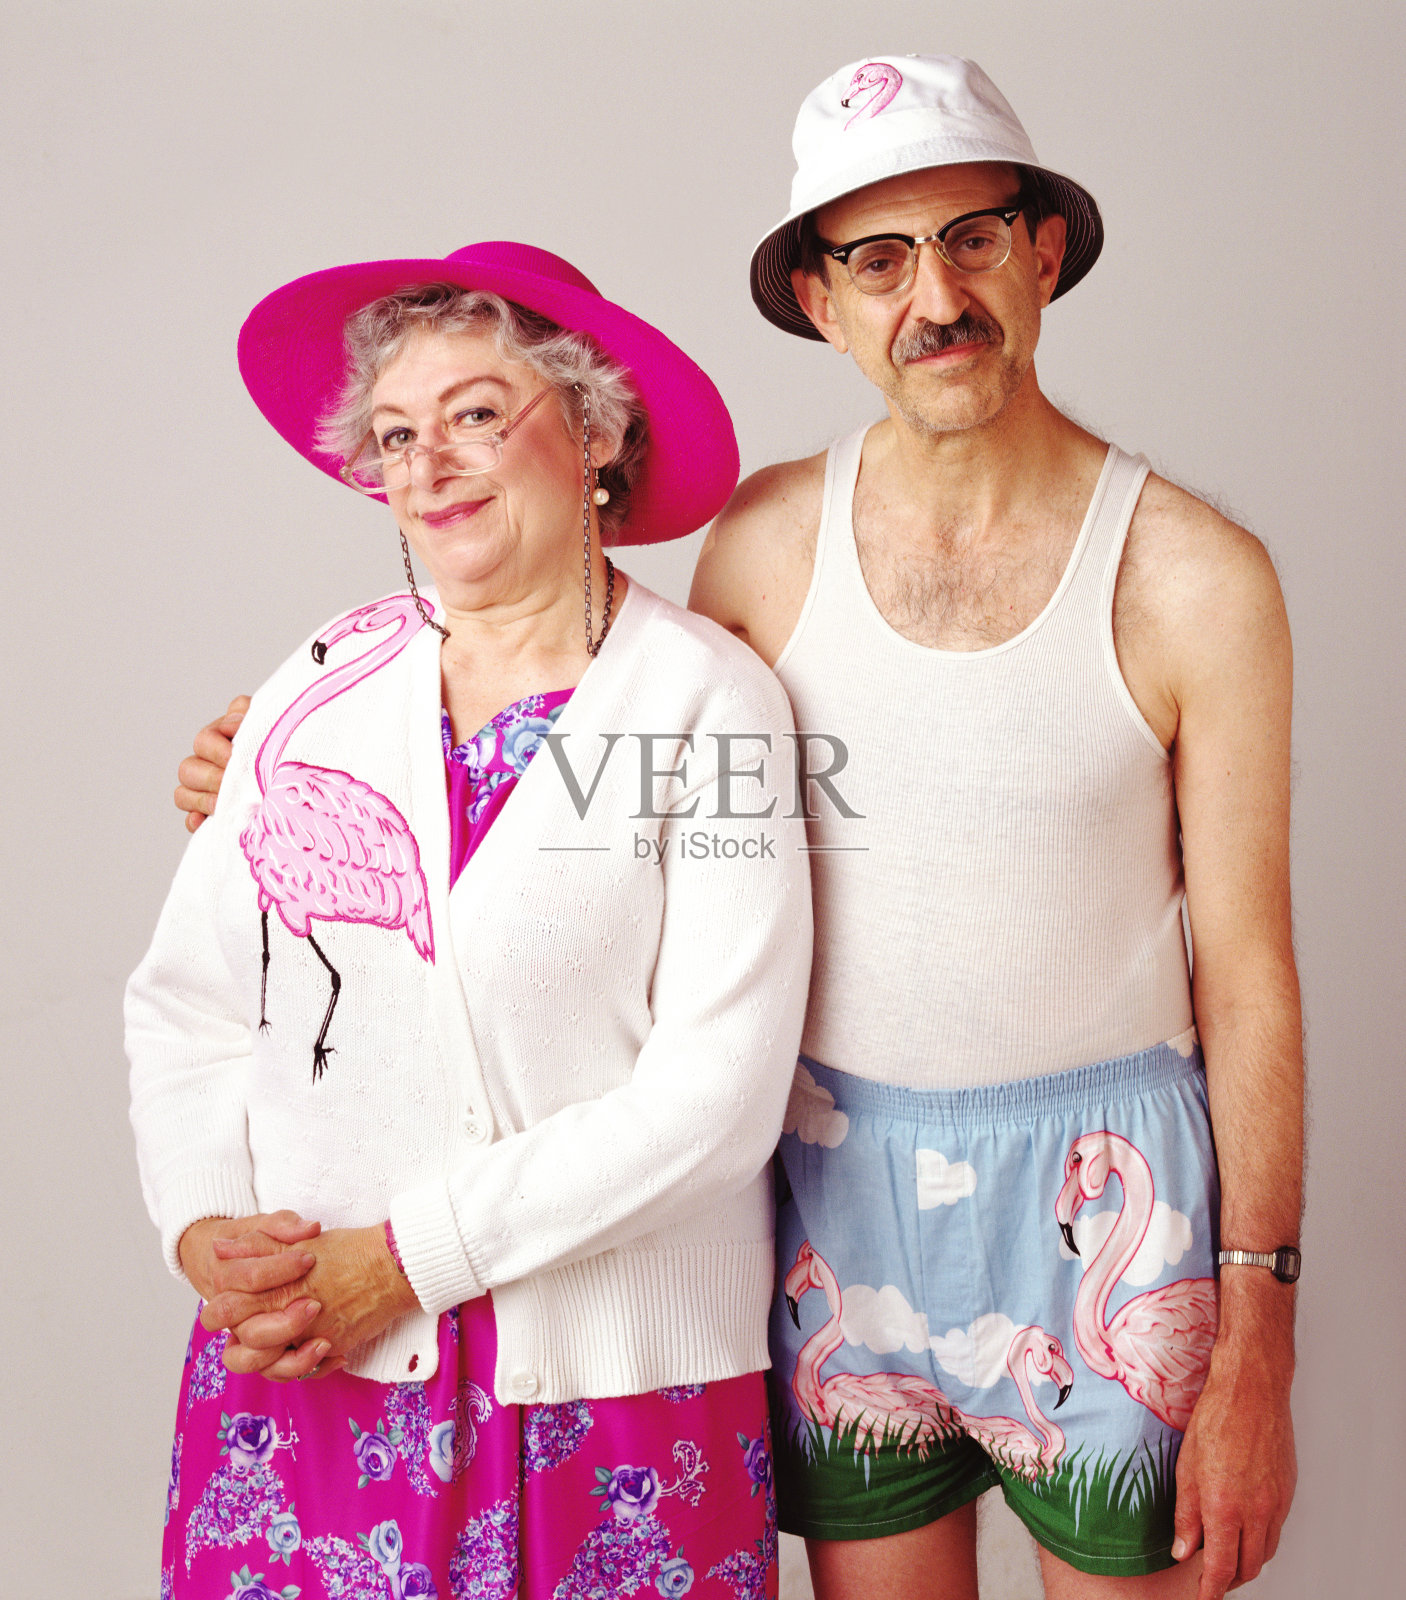 这是一对古怪的老夫妇穿着火烈鸟的照片照片摄影图片